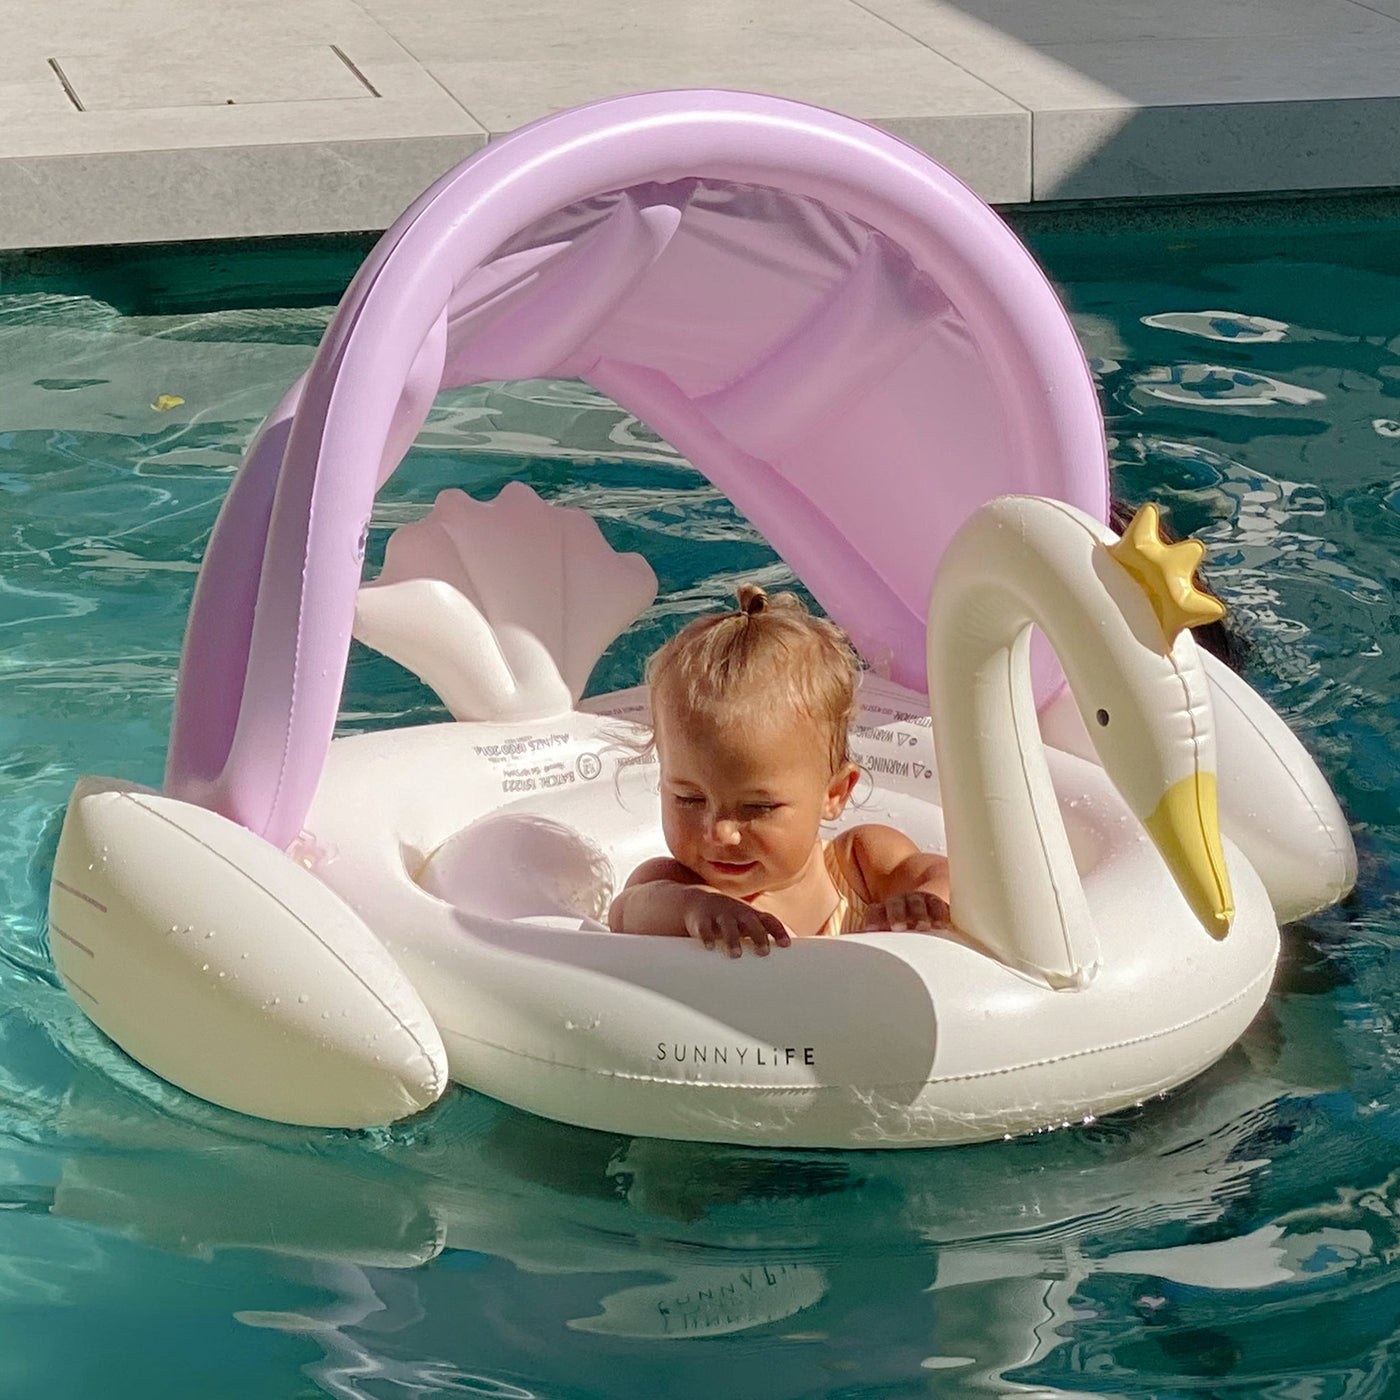 Baby Float